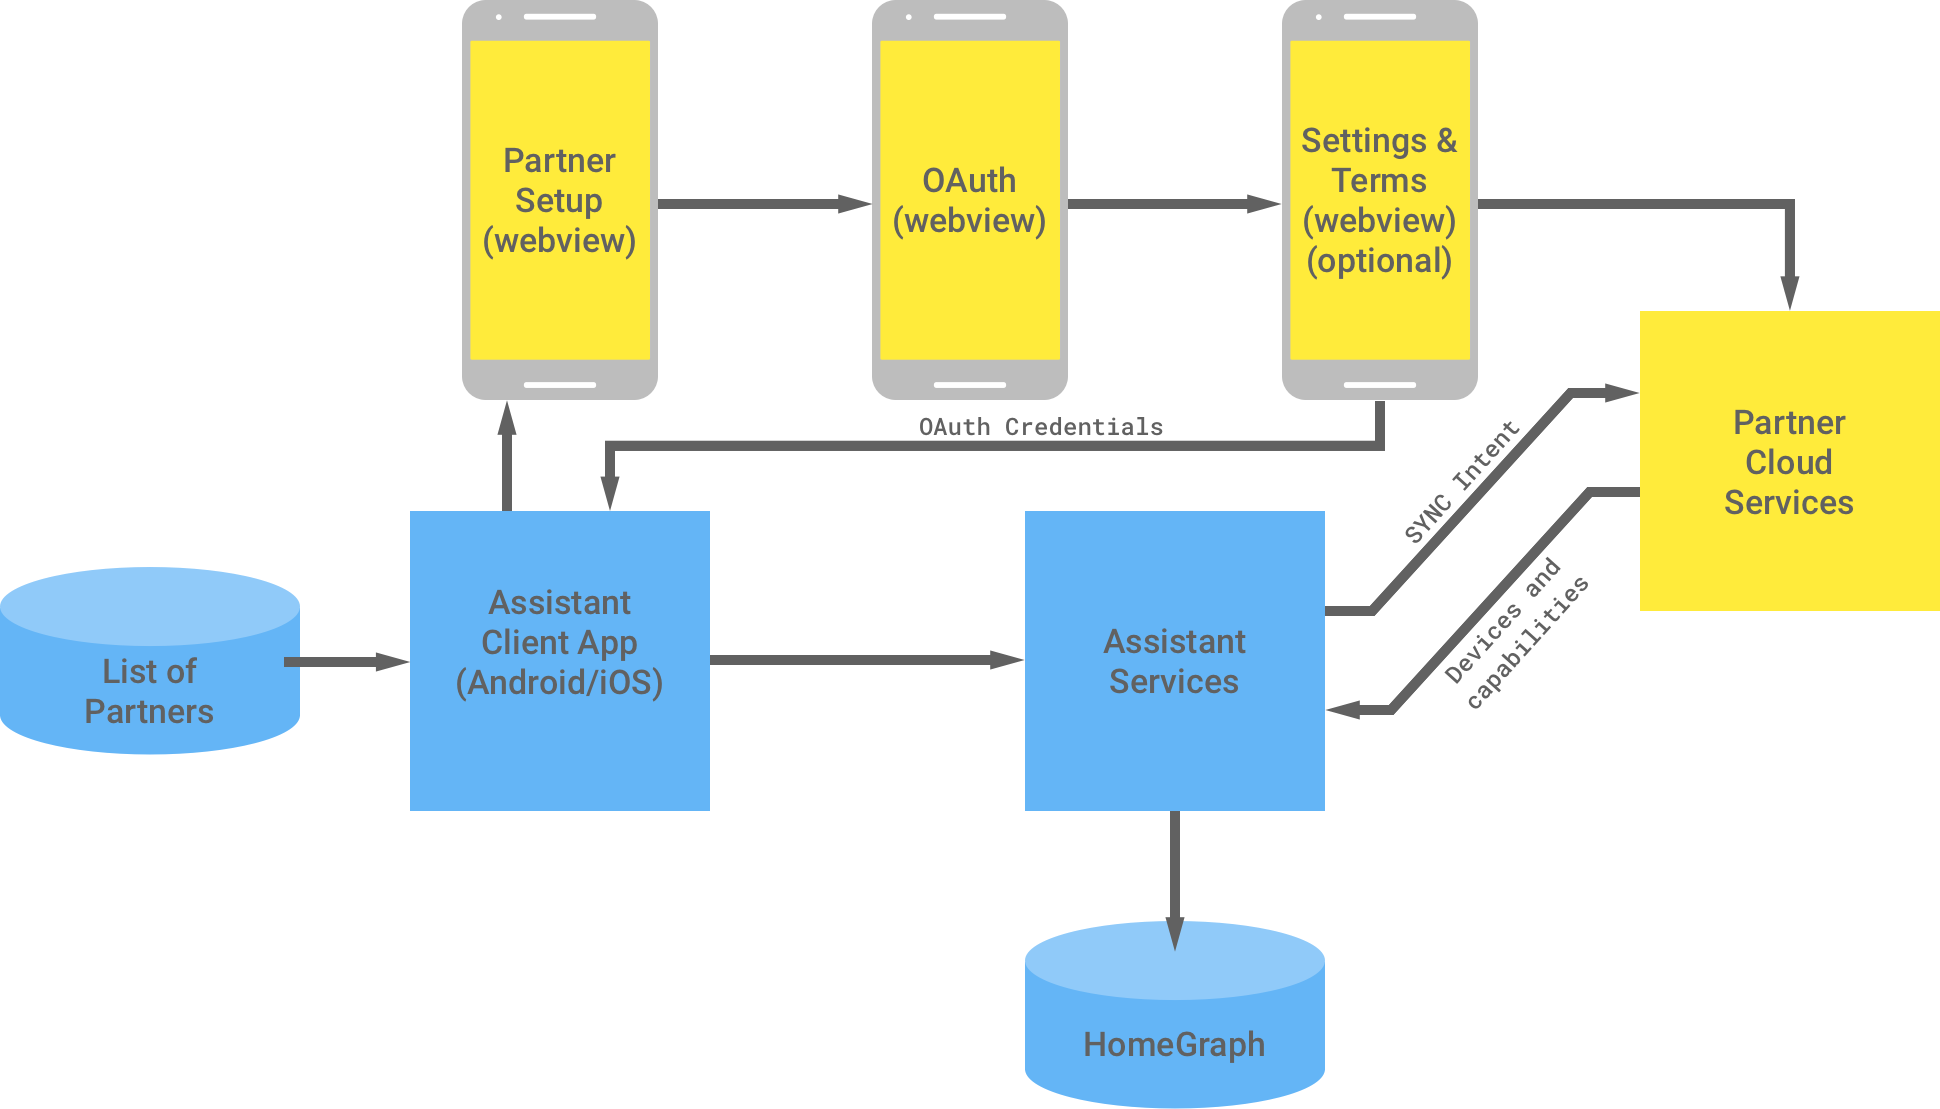 Ela mostra a interação entre a infraestrutura do Google e a do parceiro. Da infraestrutura do Google, há uma lista de parceiros disponíveis para o app cliente do Assistente que flui até a infraestrutura do parceiro para concluir a autenticação OAuth. A autenticação OAuth no lado do parceiro é a WebView de configuração do parceiro, o WebView do OAuth, os termos e configurações opcionais e os serviços de nuvem do parceiro. Em seguida, a infraestrutura do parceiro retorna as credenciais do OAuth para o app cliente do Assistente. Os serviços de nuvem do parceiro enviam dispositivos e recursos disponíveis para os serviços do Assistente, que armazenam as informações no Home Graph.